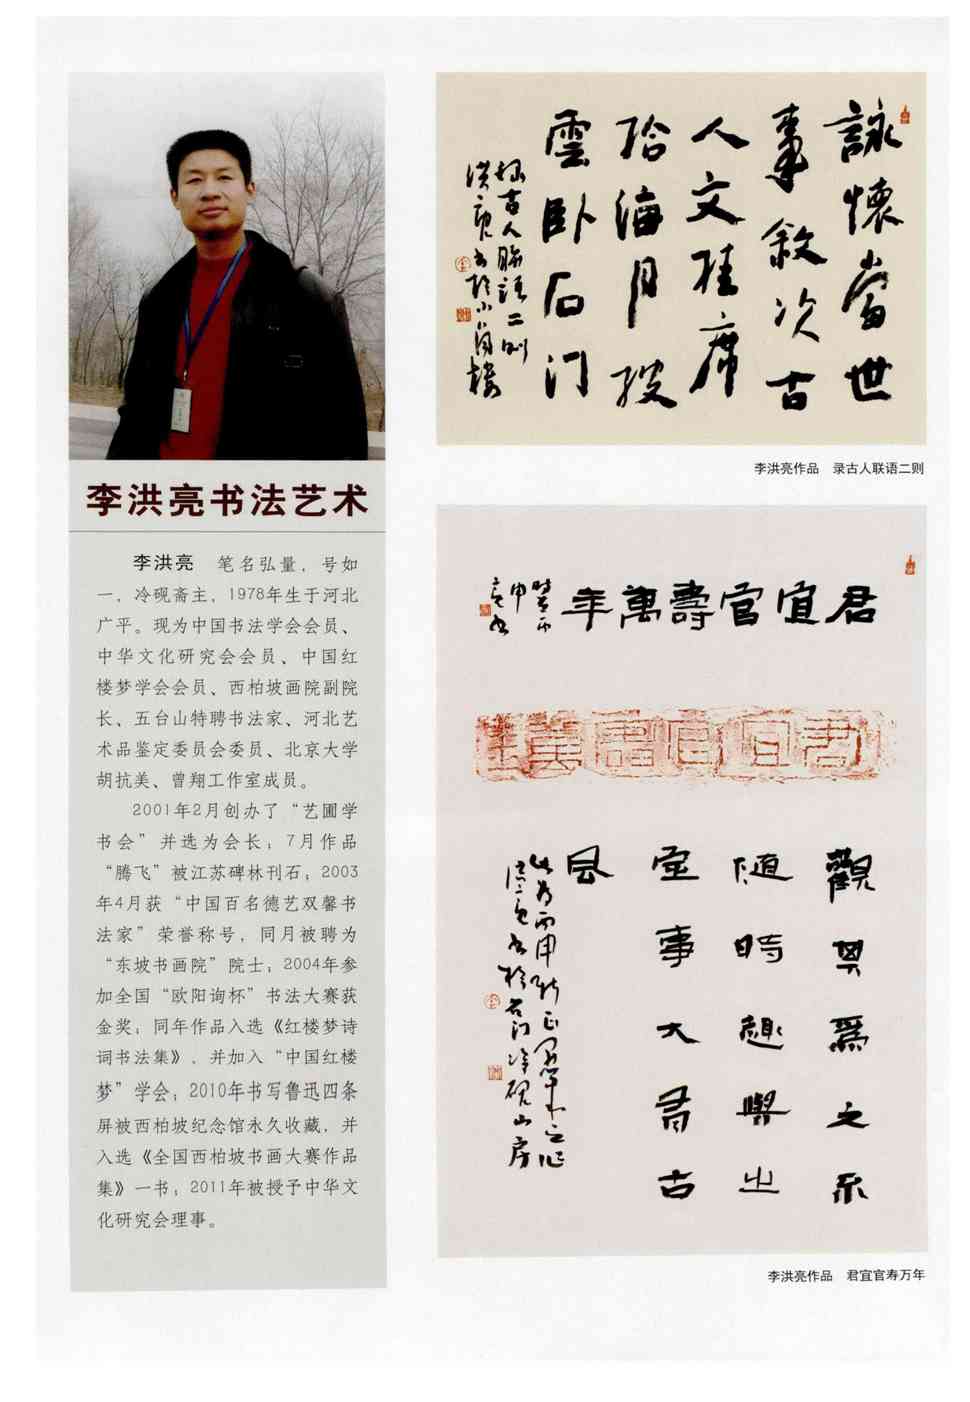 期刊李洪亮书法艺术 李洪亮笔名弘量,号如一,冷砚斋主,1978年生于